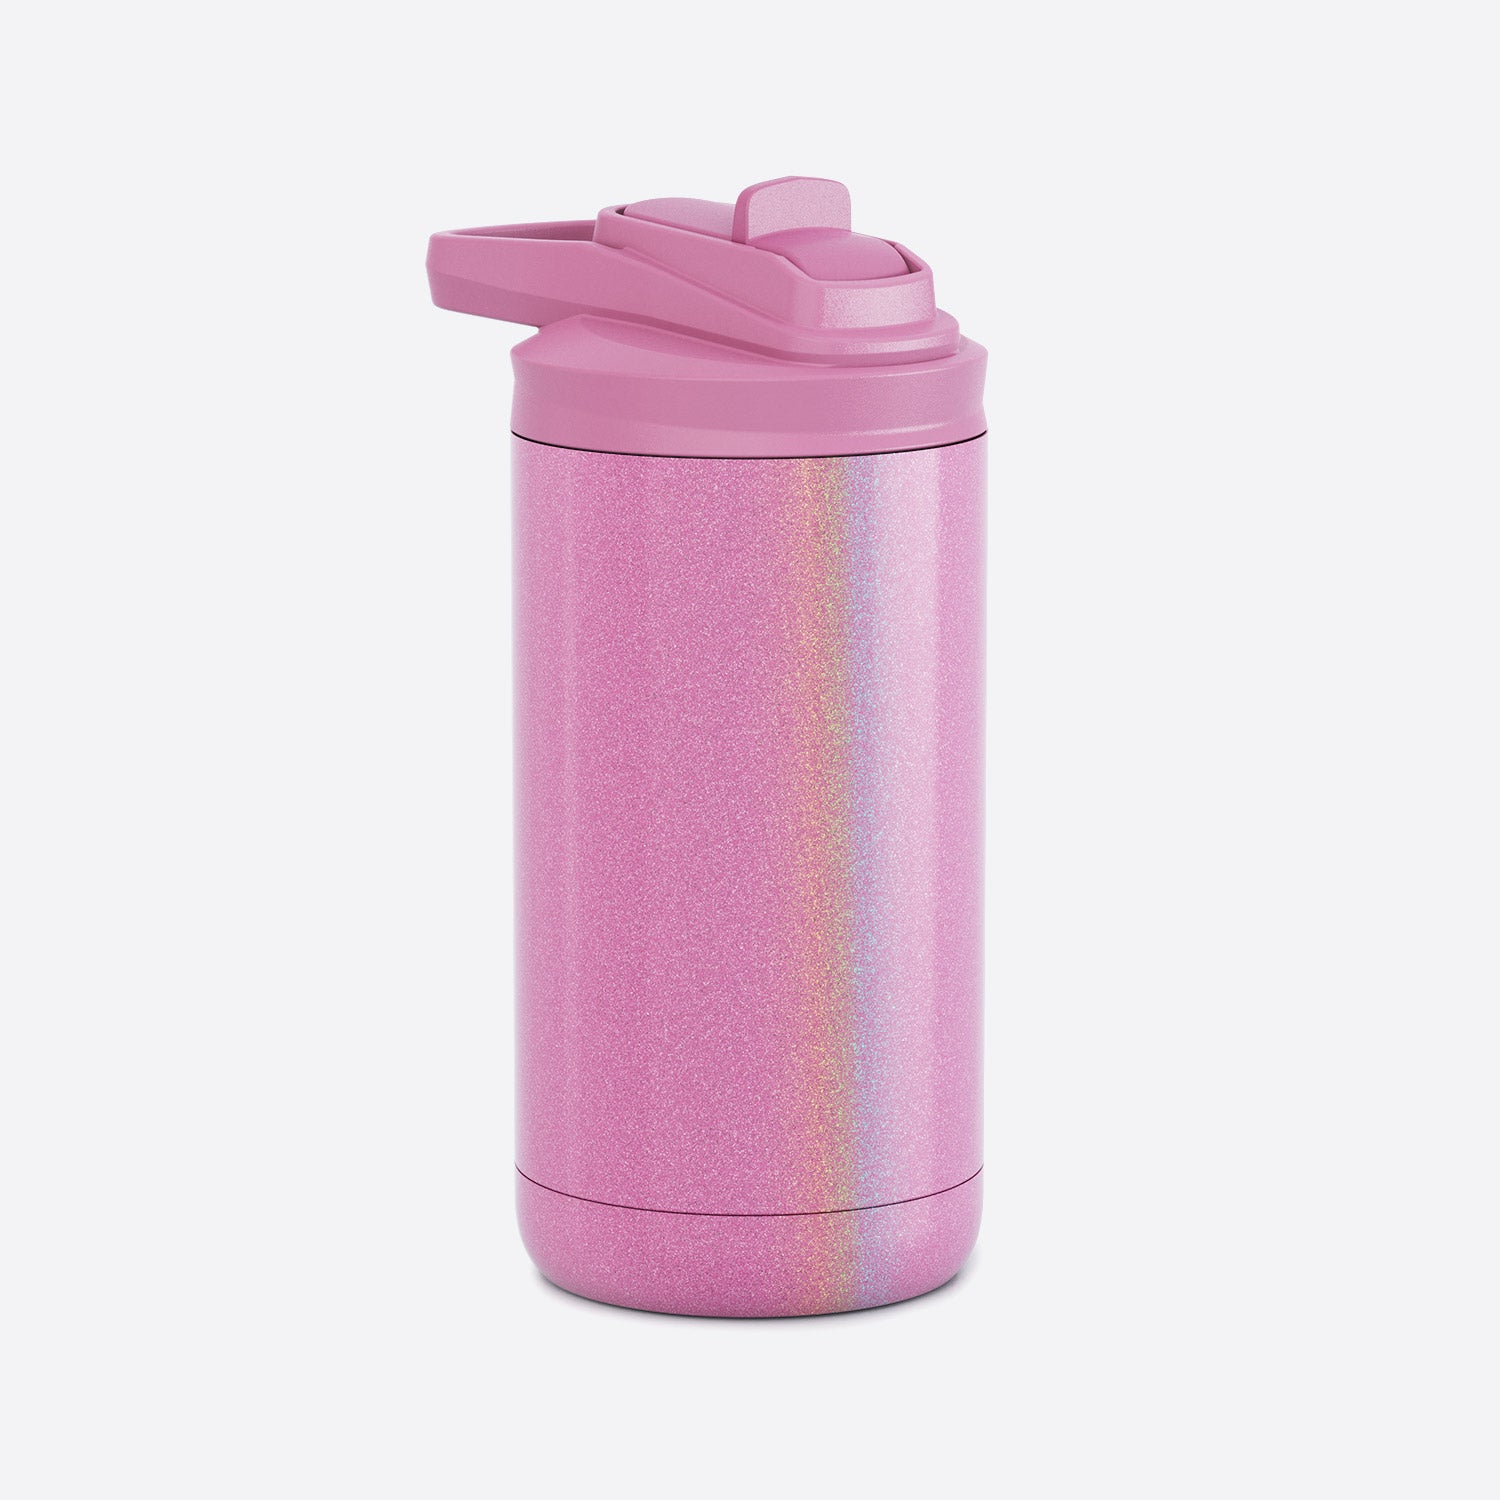 https://maarsdrinkware.com/cdn/shop/products/maars-maker-kids-12-ounce-tumbler-magic-glitter-pink.jpg?v=1679079099&width=1946